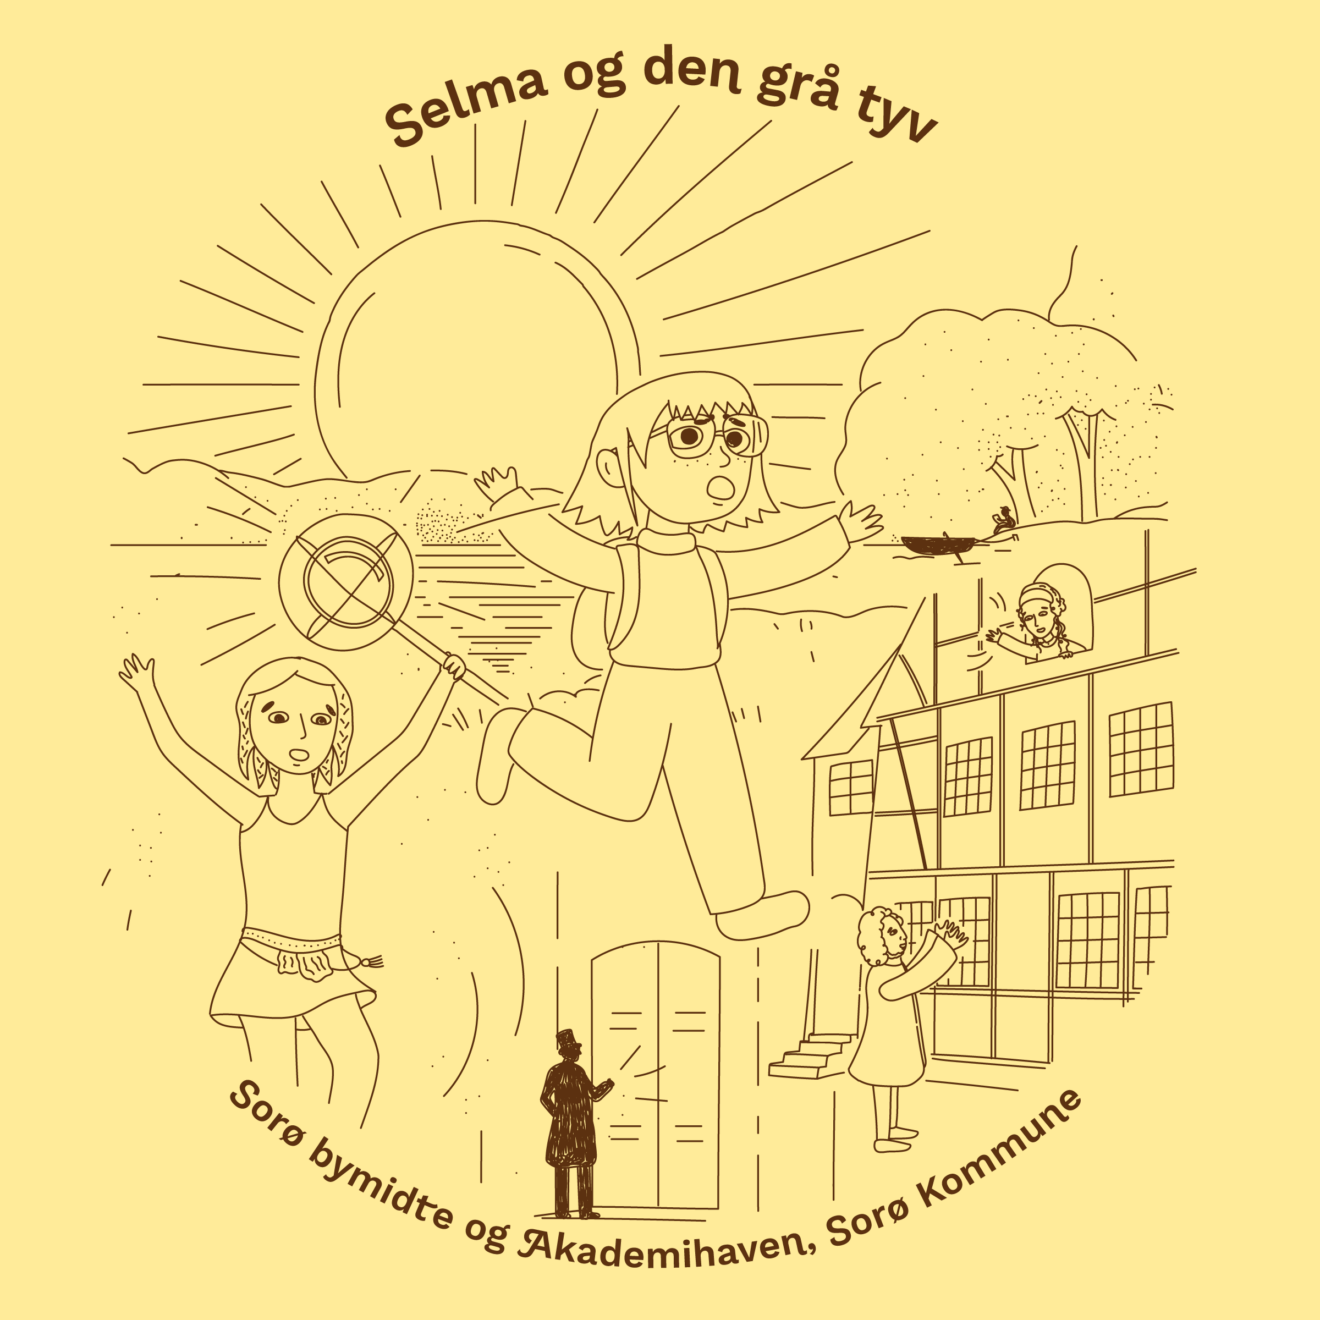 Selma og den grå tyv - et nyt Natureventyr for børn